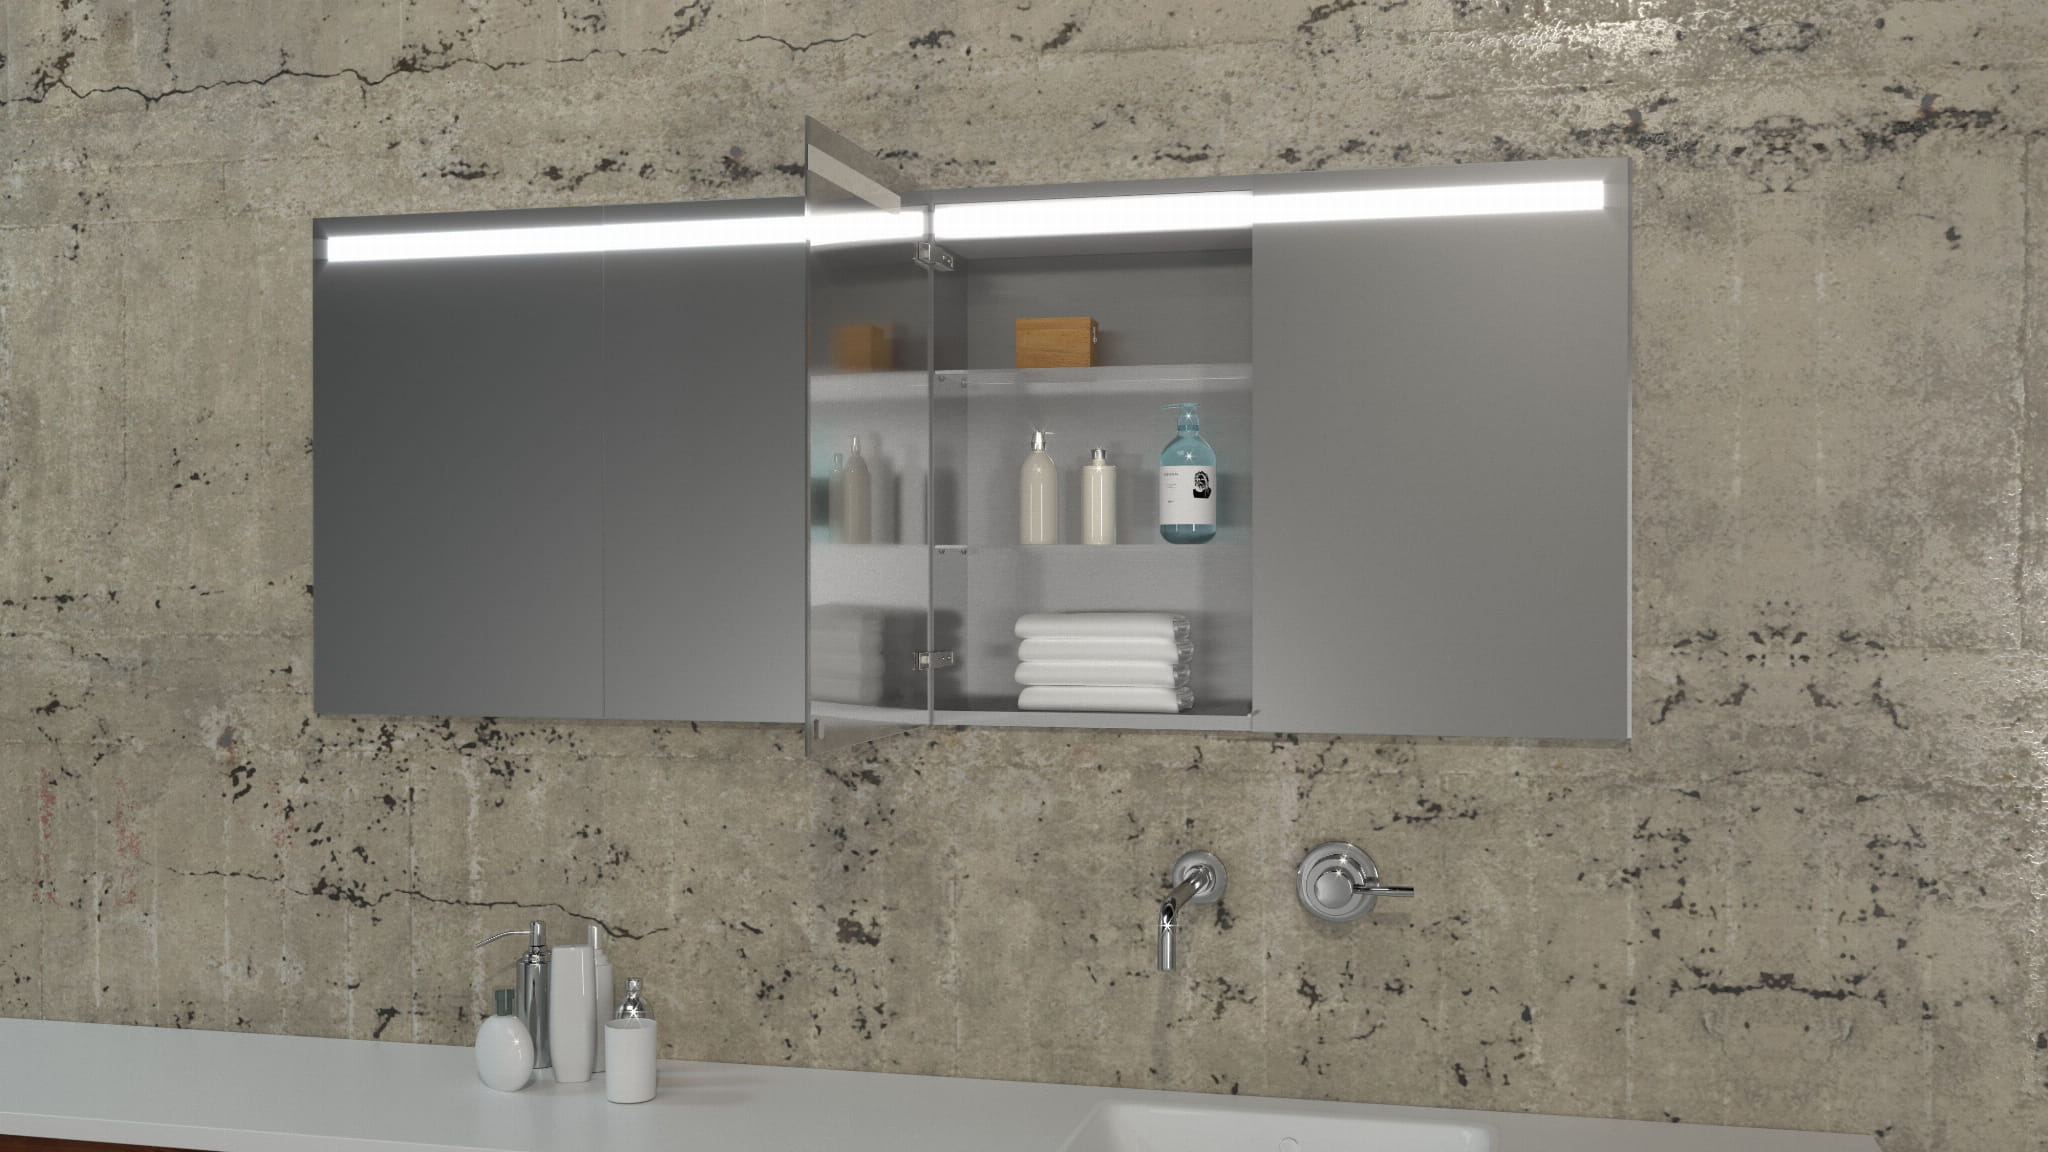 Exclusive - Inbouw spiegelkast voor in de muur led verlichting 60 cm - Badkamermeubel outlet